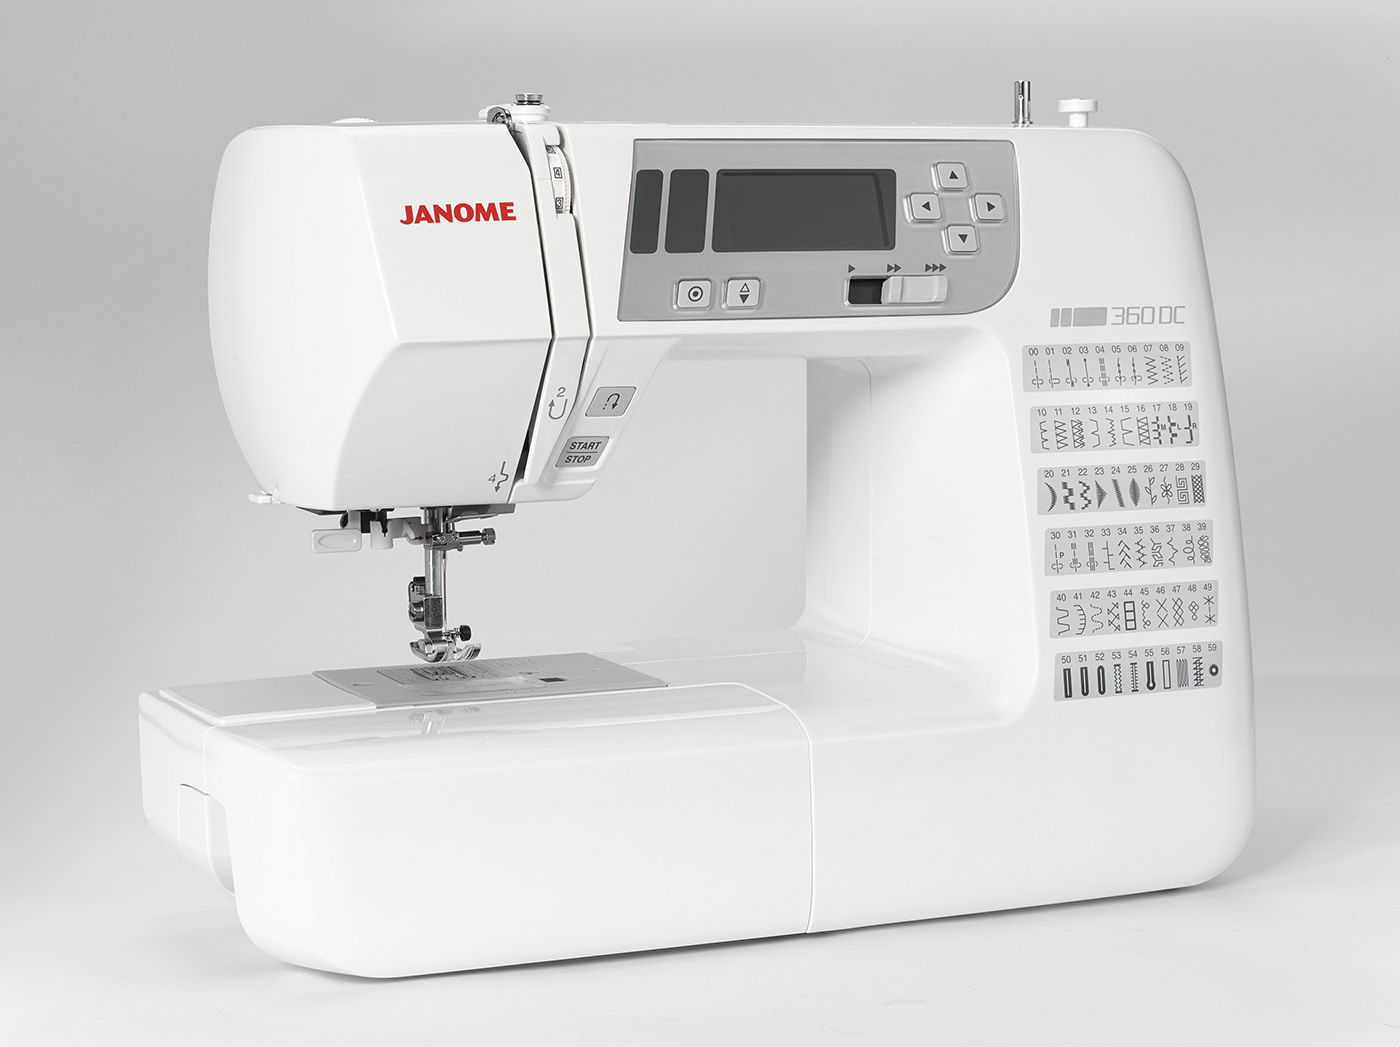 Обзор швейной машинки janome. Швейная машинка Джаноме модель 74303. Швейная машина Janome 423s. Швейная машина Janome 2130. Janome 3900 DC челнок.